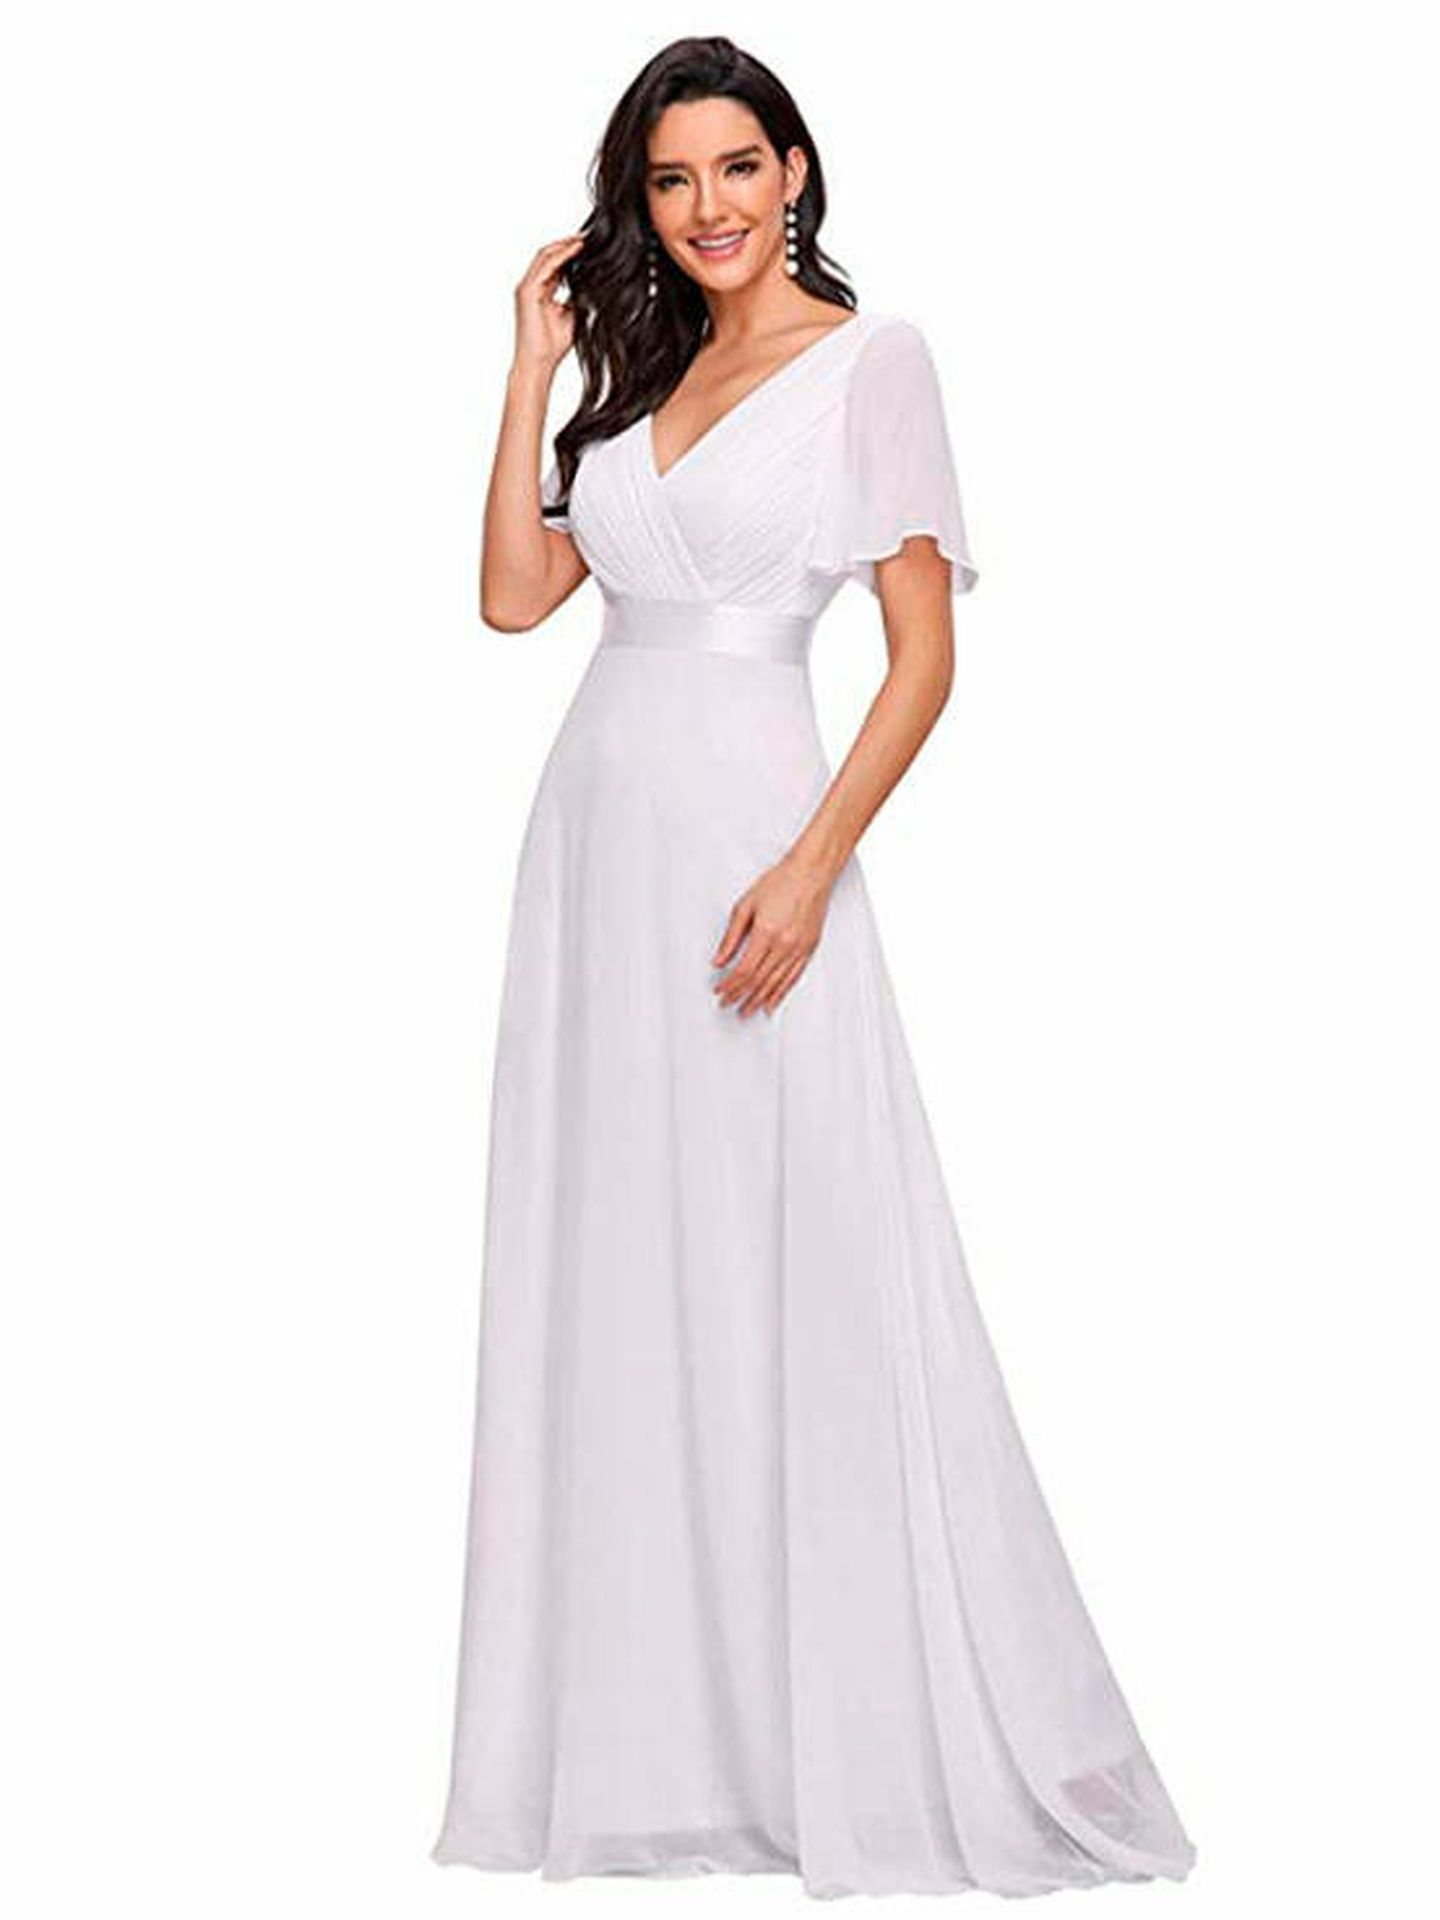 Vestidos Blancos Sencillos Y Elegantes Offer Store, Save 59% 